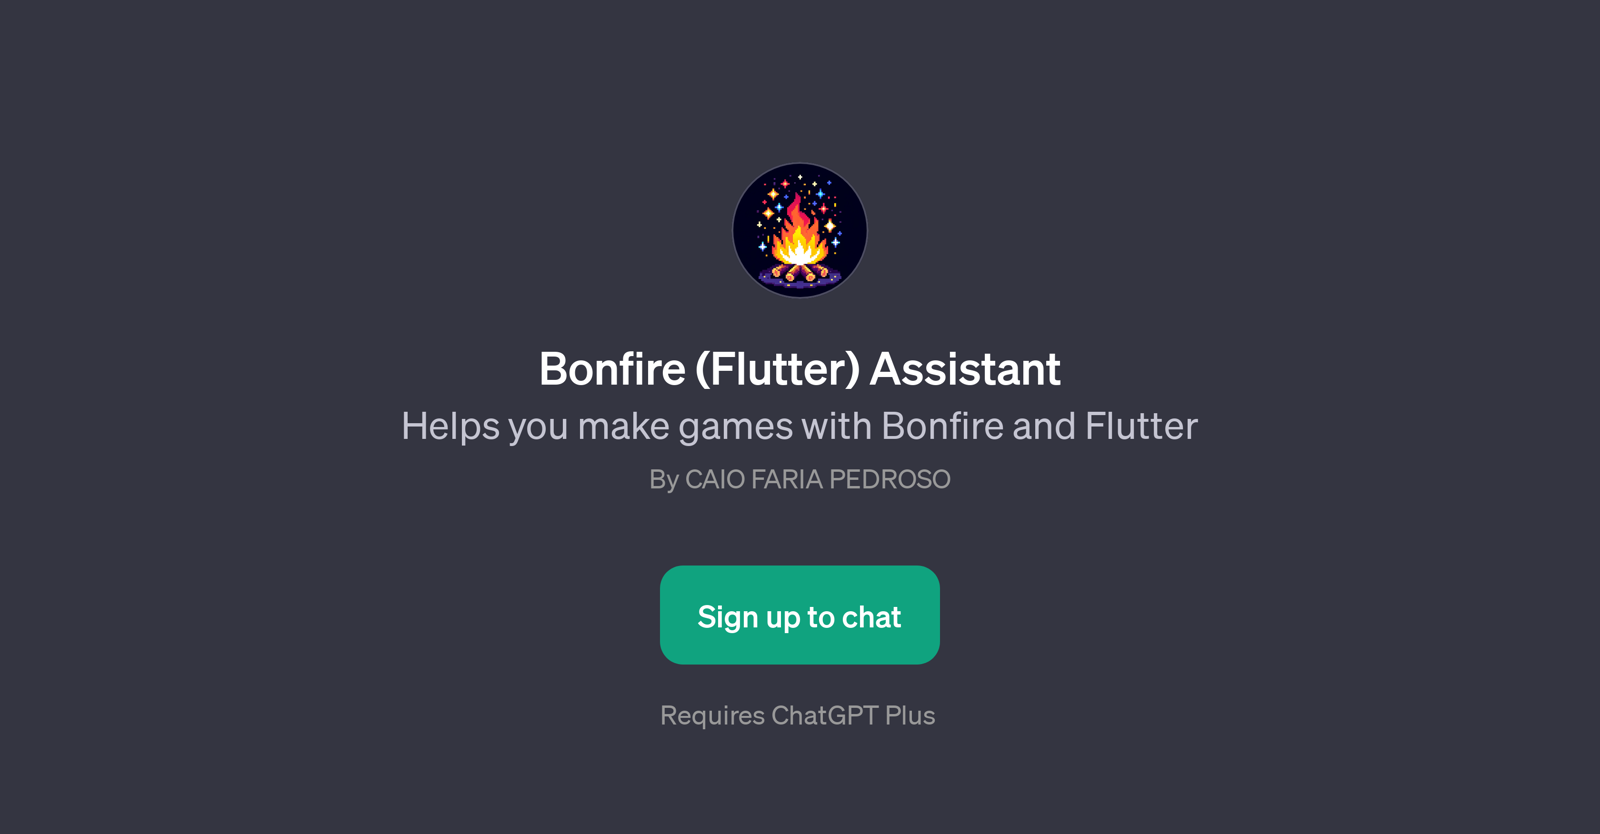 Bonfire (Flutter) Assistant website